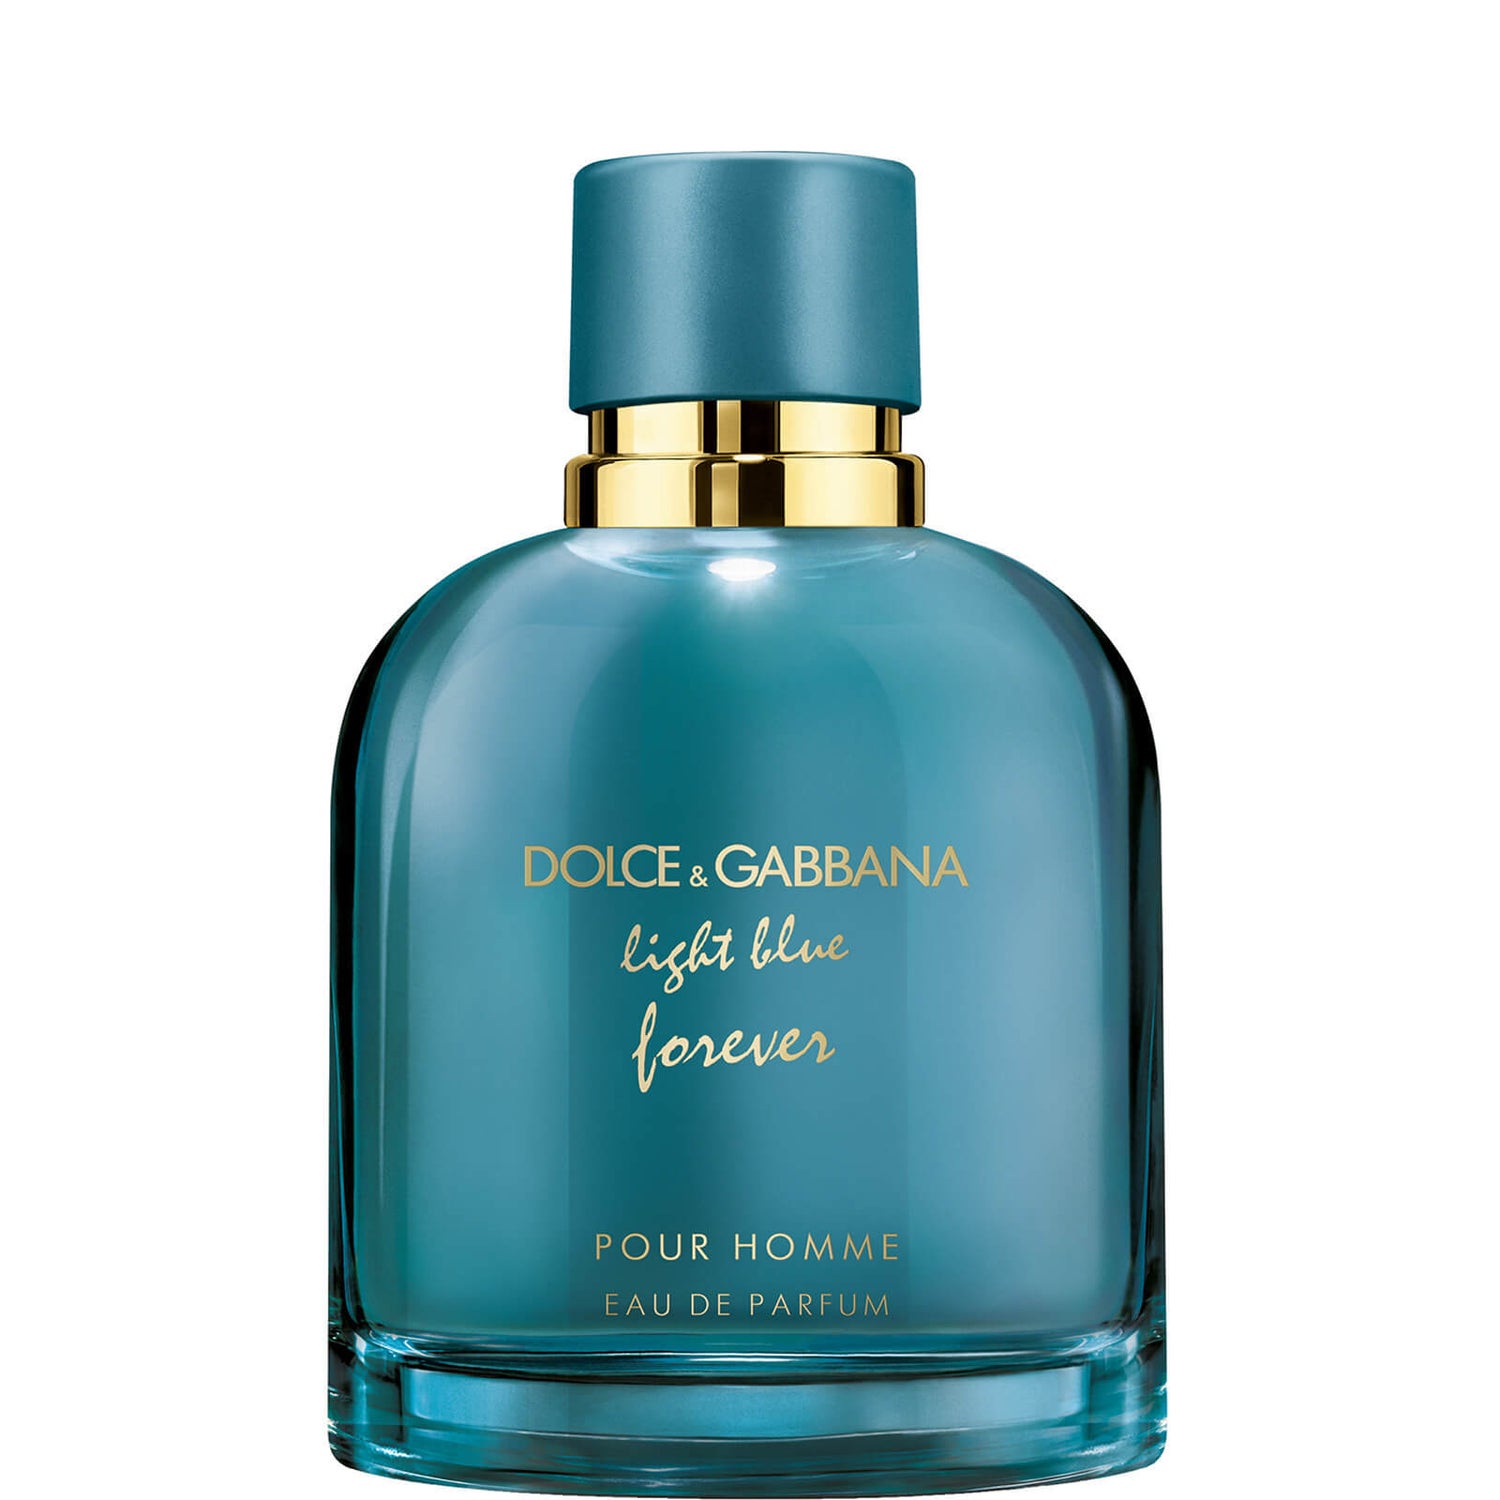 Dolce&Gabbana Light Pour Homme Eau de Parfum - 100ml lookfantastic